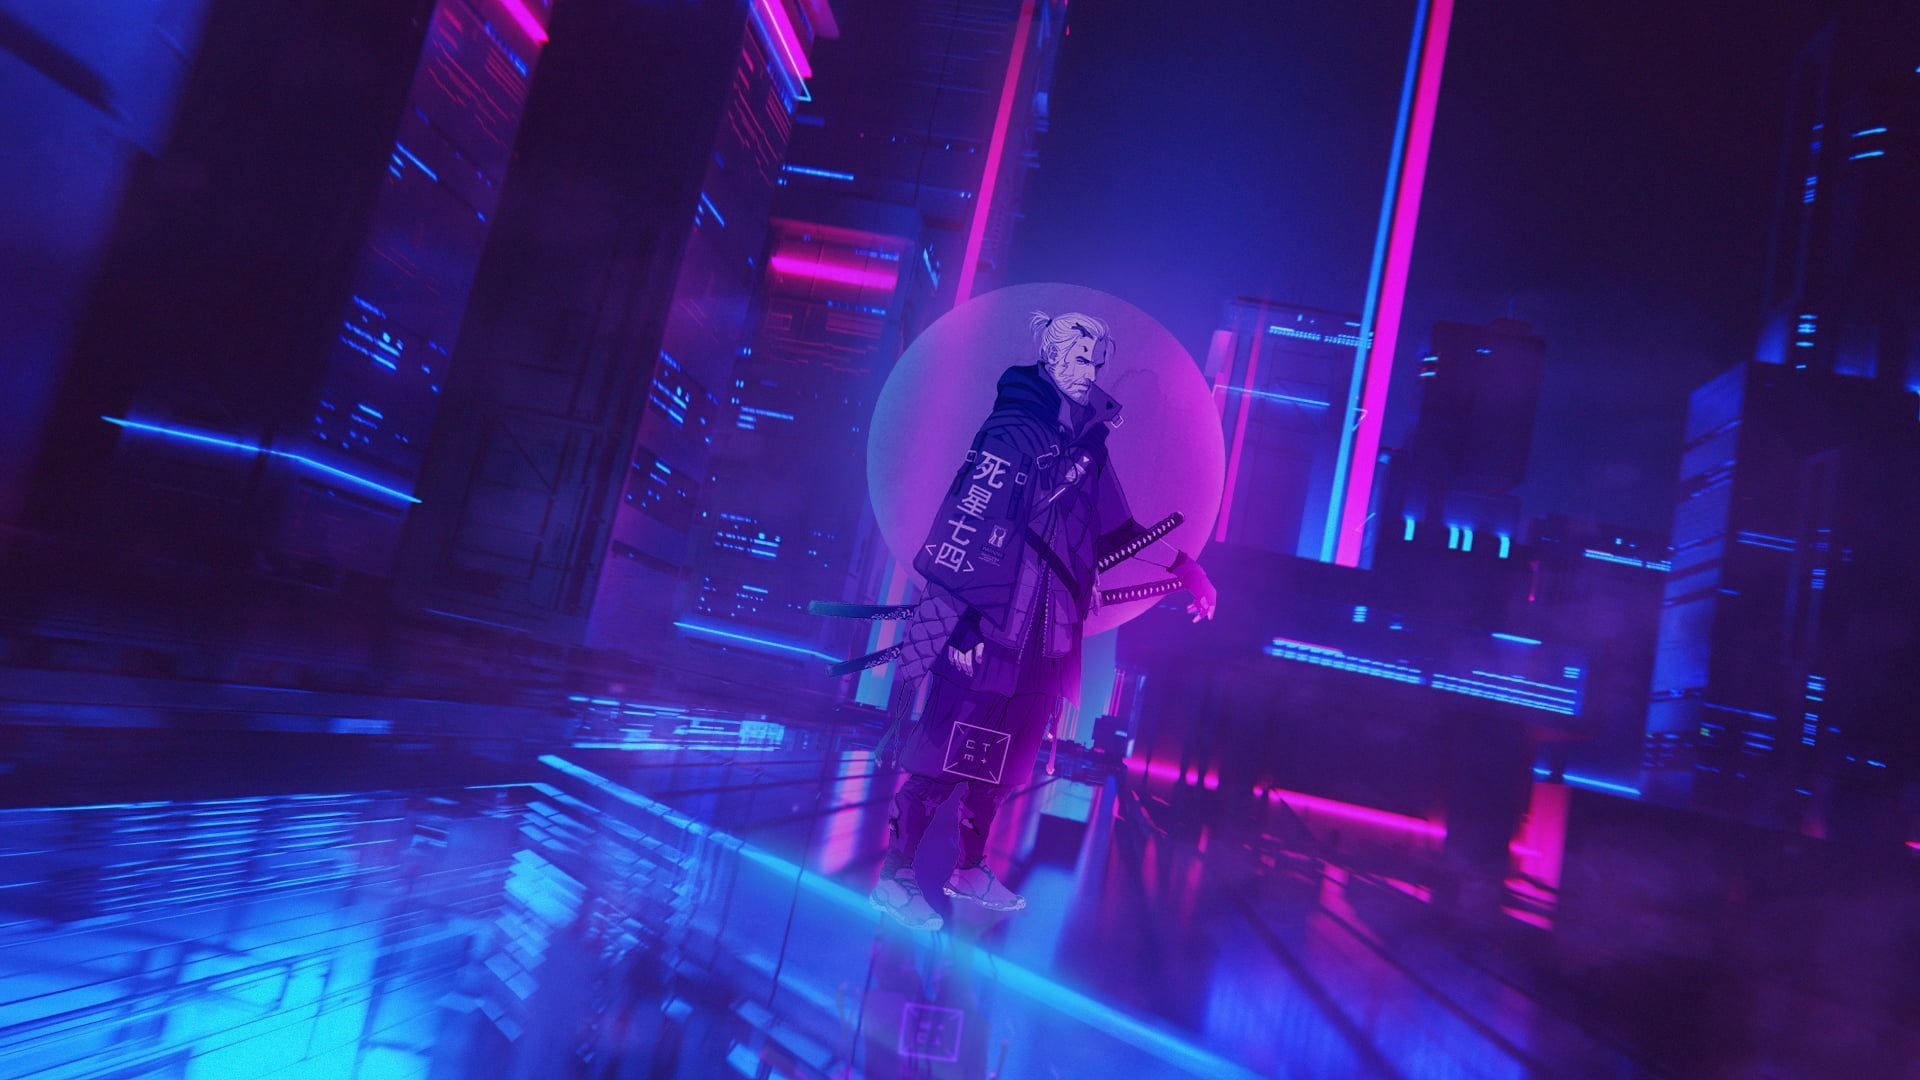 cyberpunk Cyberpunk 2077 cyber city #neon The Witcher Geralt of Rivia P #wallpaper #hdwallpaper #desktop. The witcher, Cyberpunk, The witcher geralt